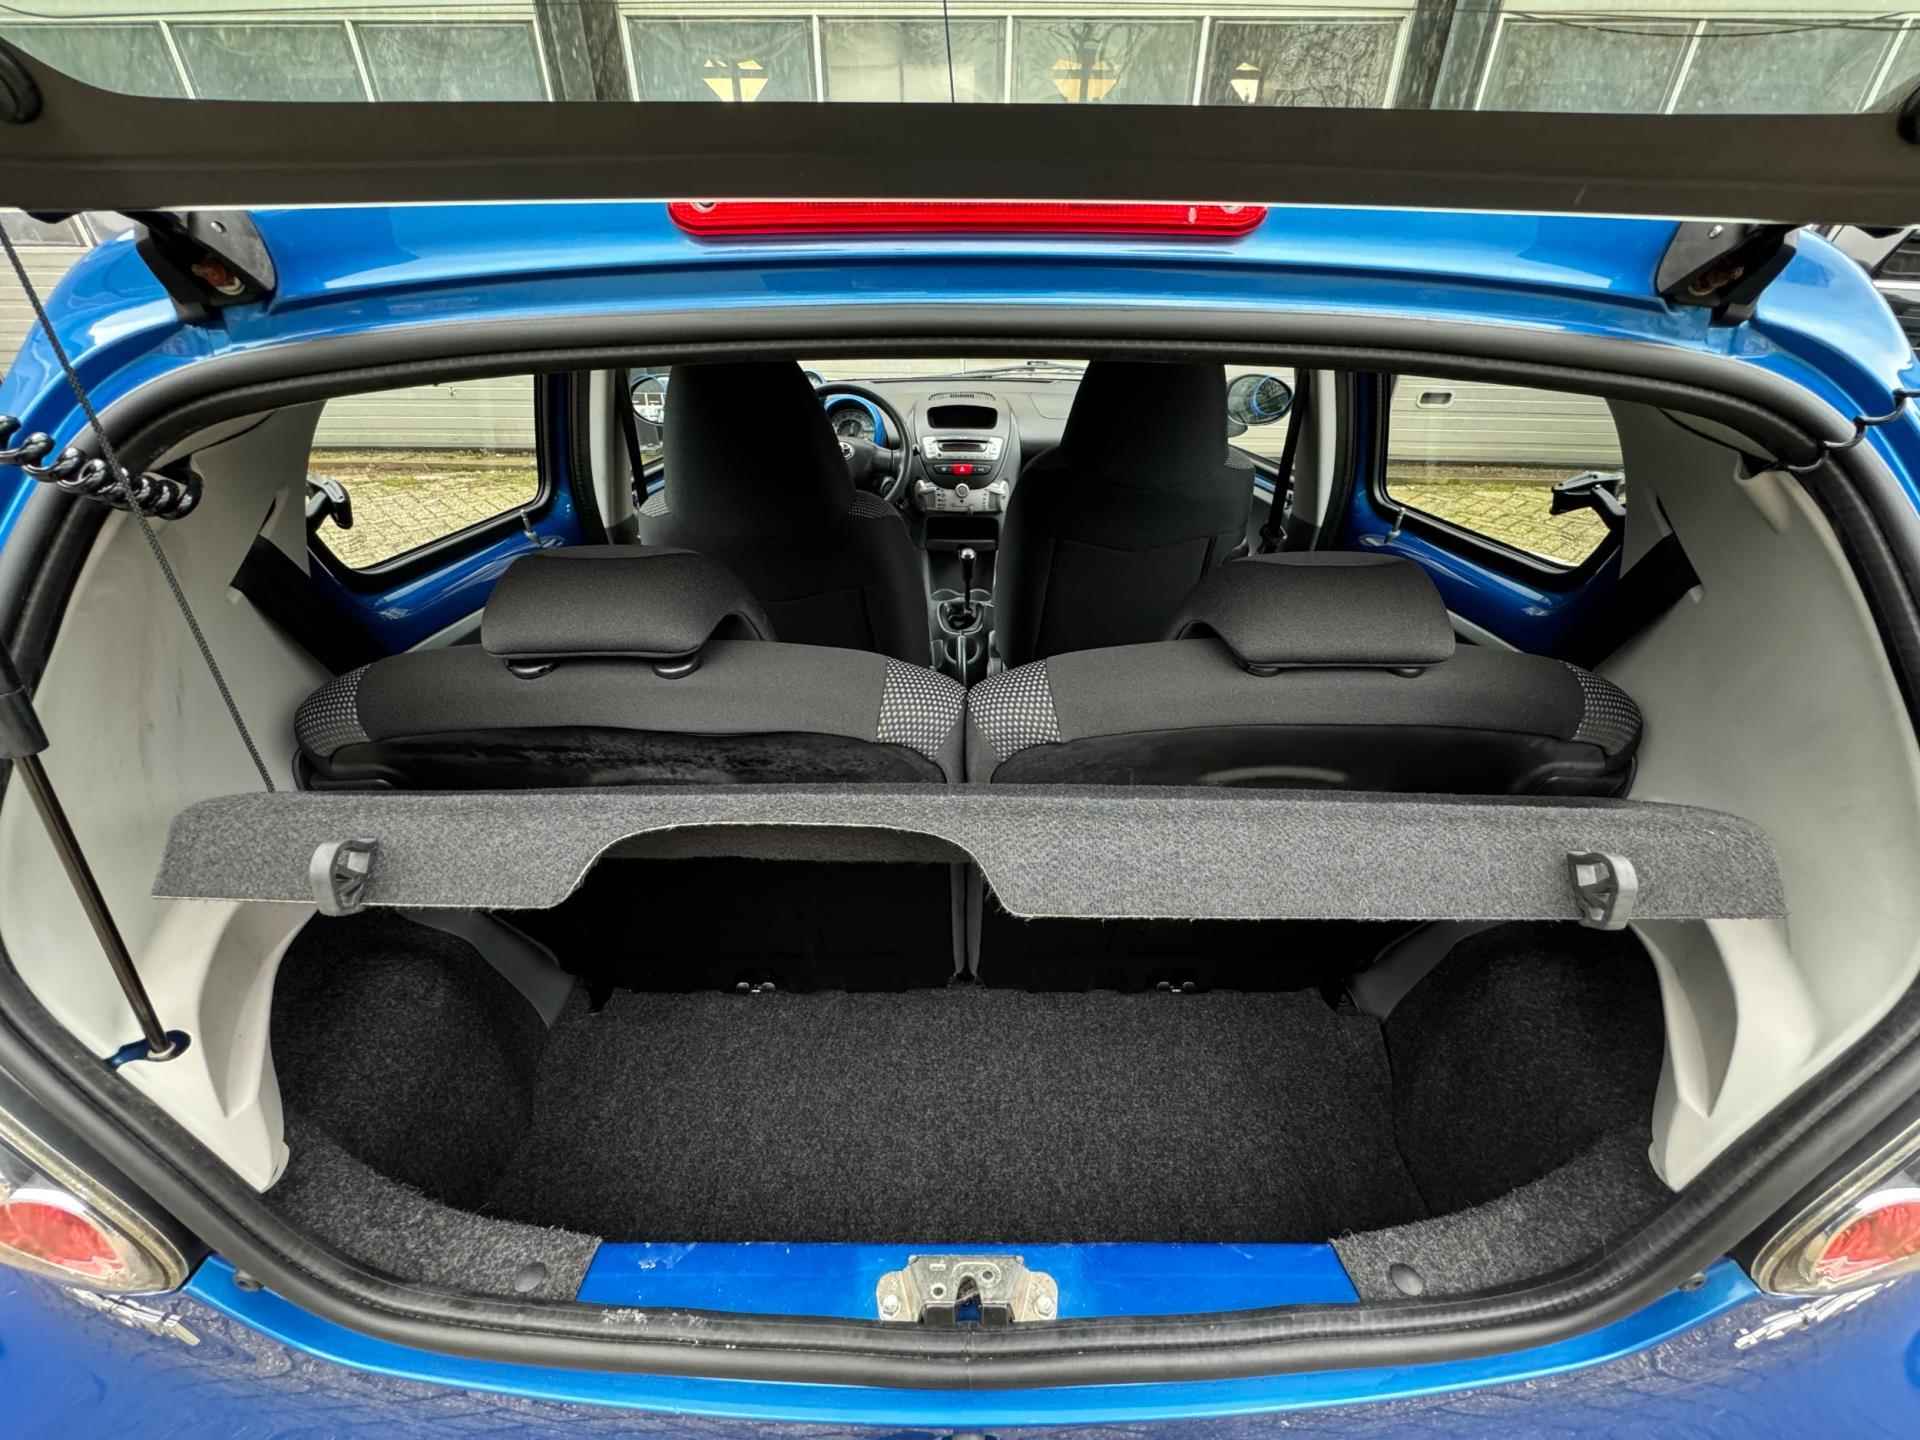 Toyota Aygo 1.0-12V|Airco|Lage KM|5drs|Topstaat|Toerenteller|Special Blue|LM velgen|Boekjes|Zeer nette auto± - 22/34